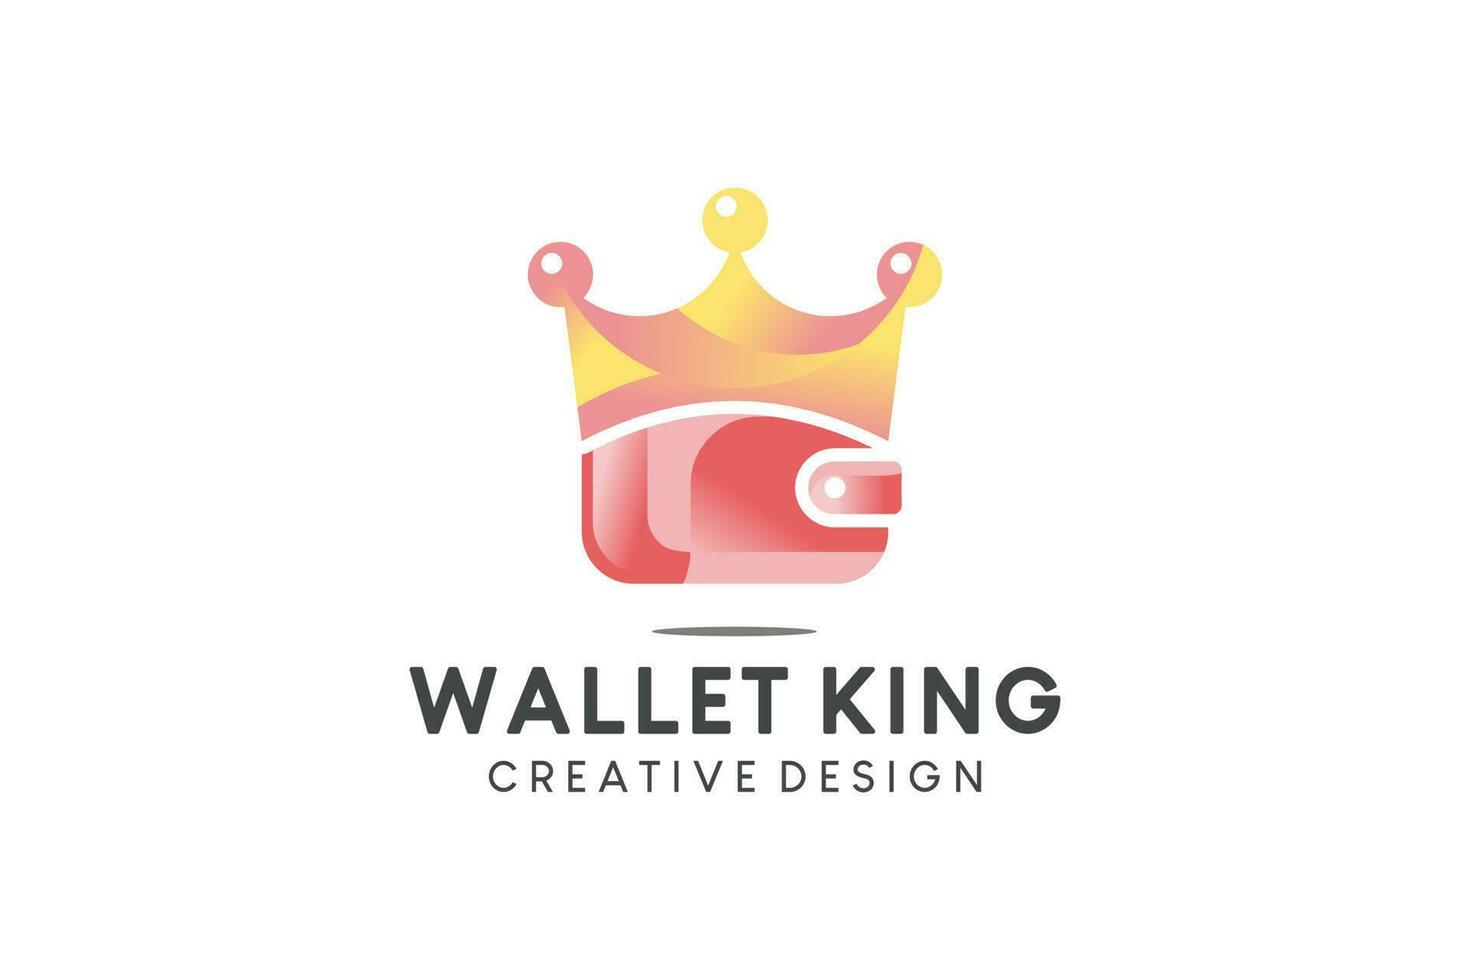 King wallet icon logo design with creative concept vector